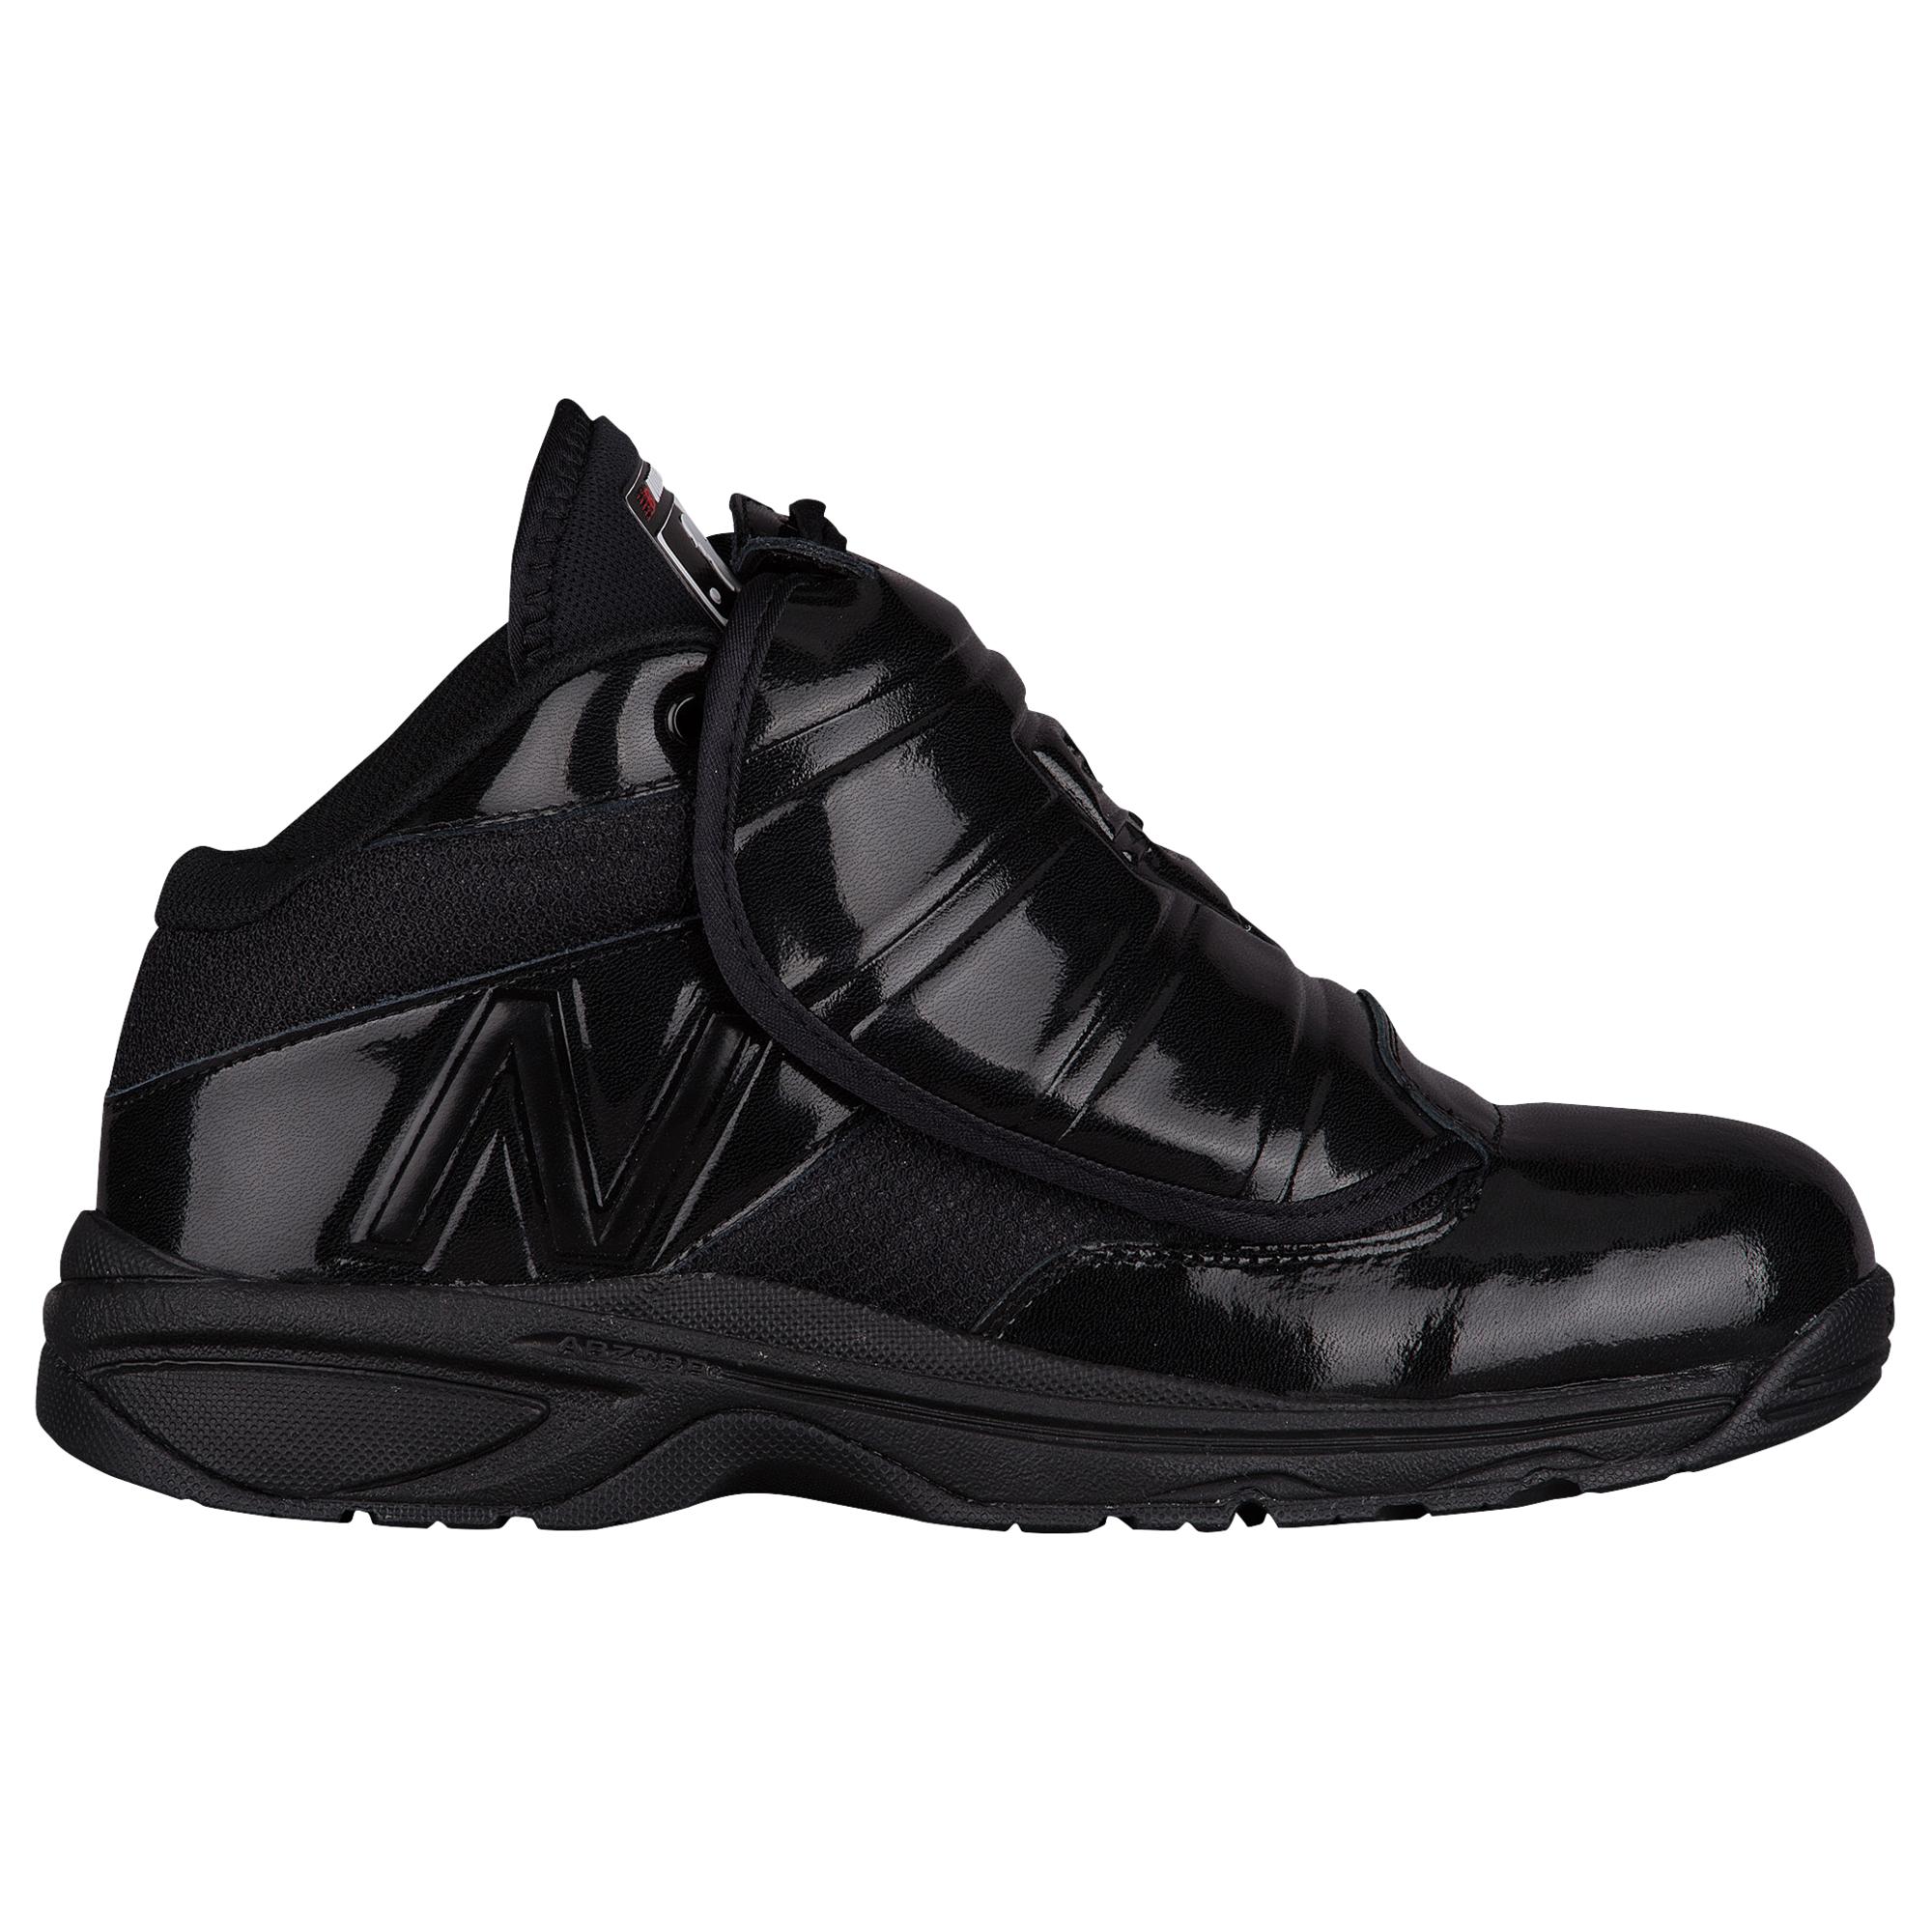 New Balance Mlb Umpire V2 Shoes in Black for Men - Lyst